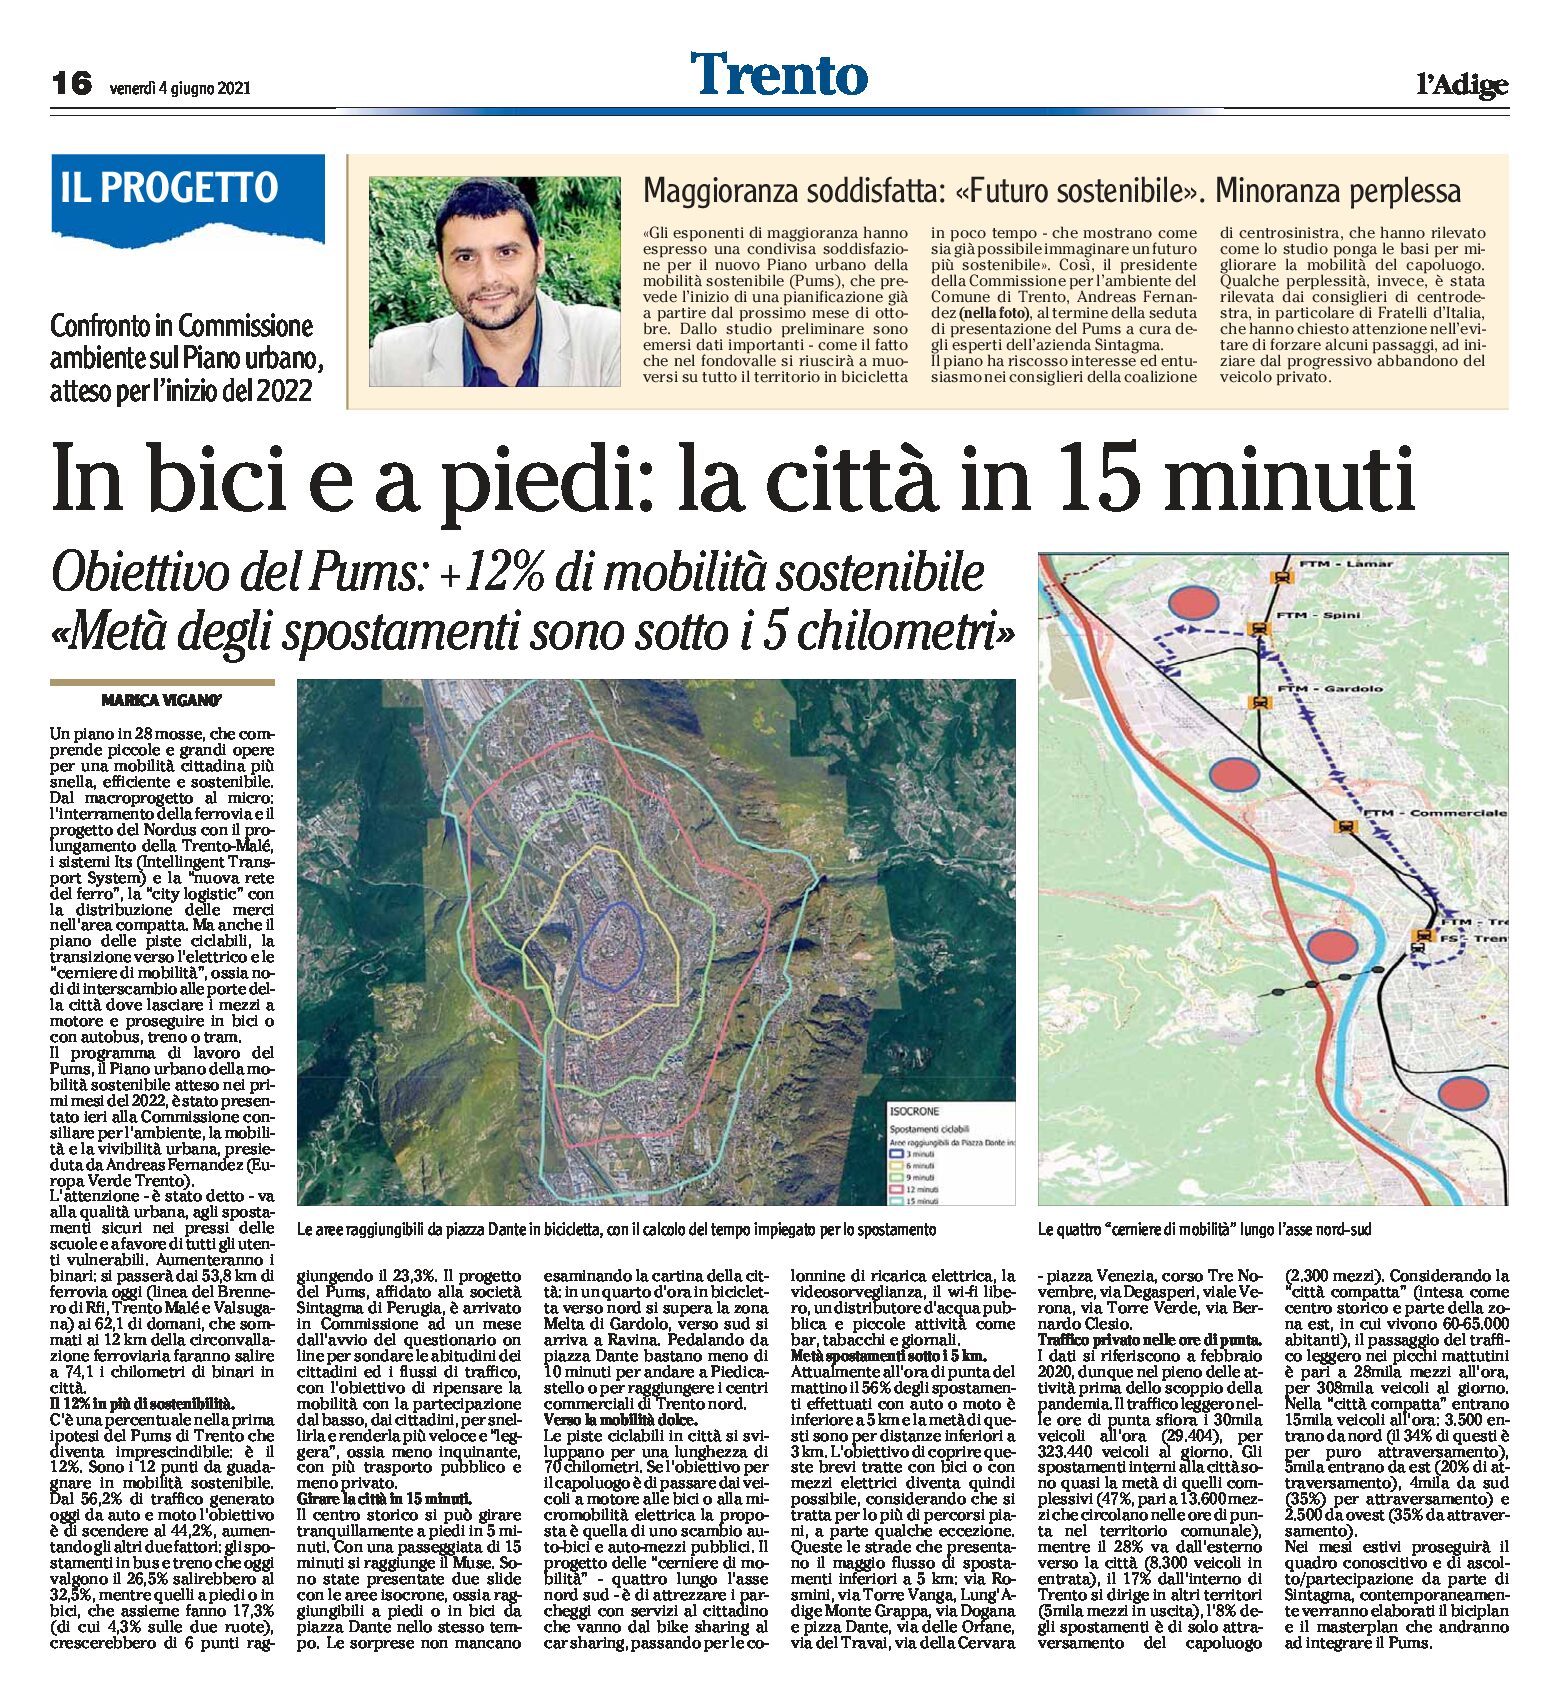 Trento: in bici e a piedi, la città in 15 minuti